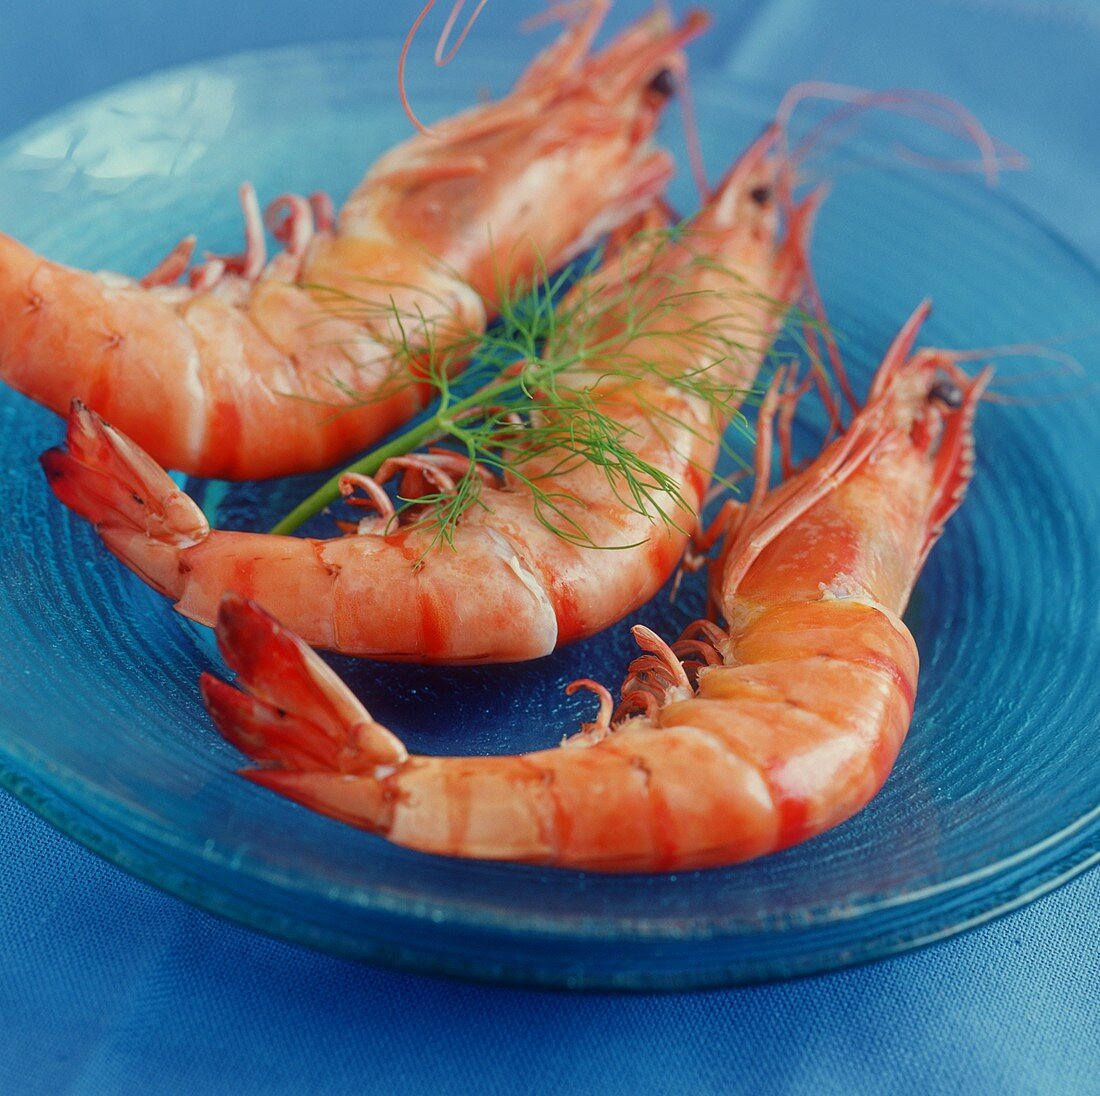 Shrimps on blue plate